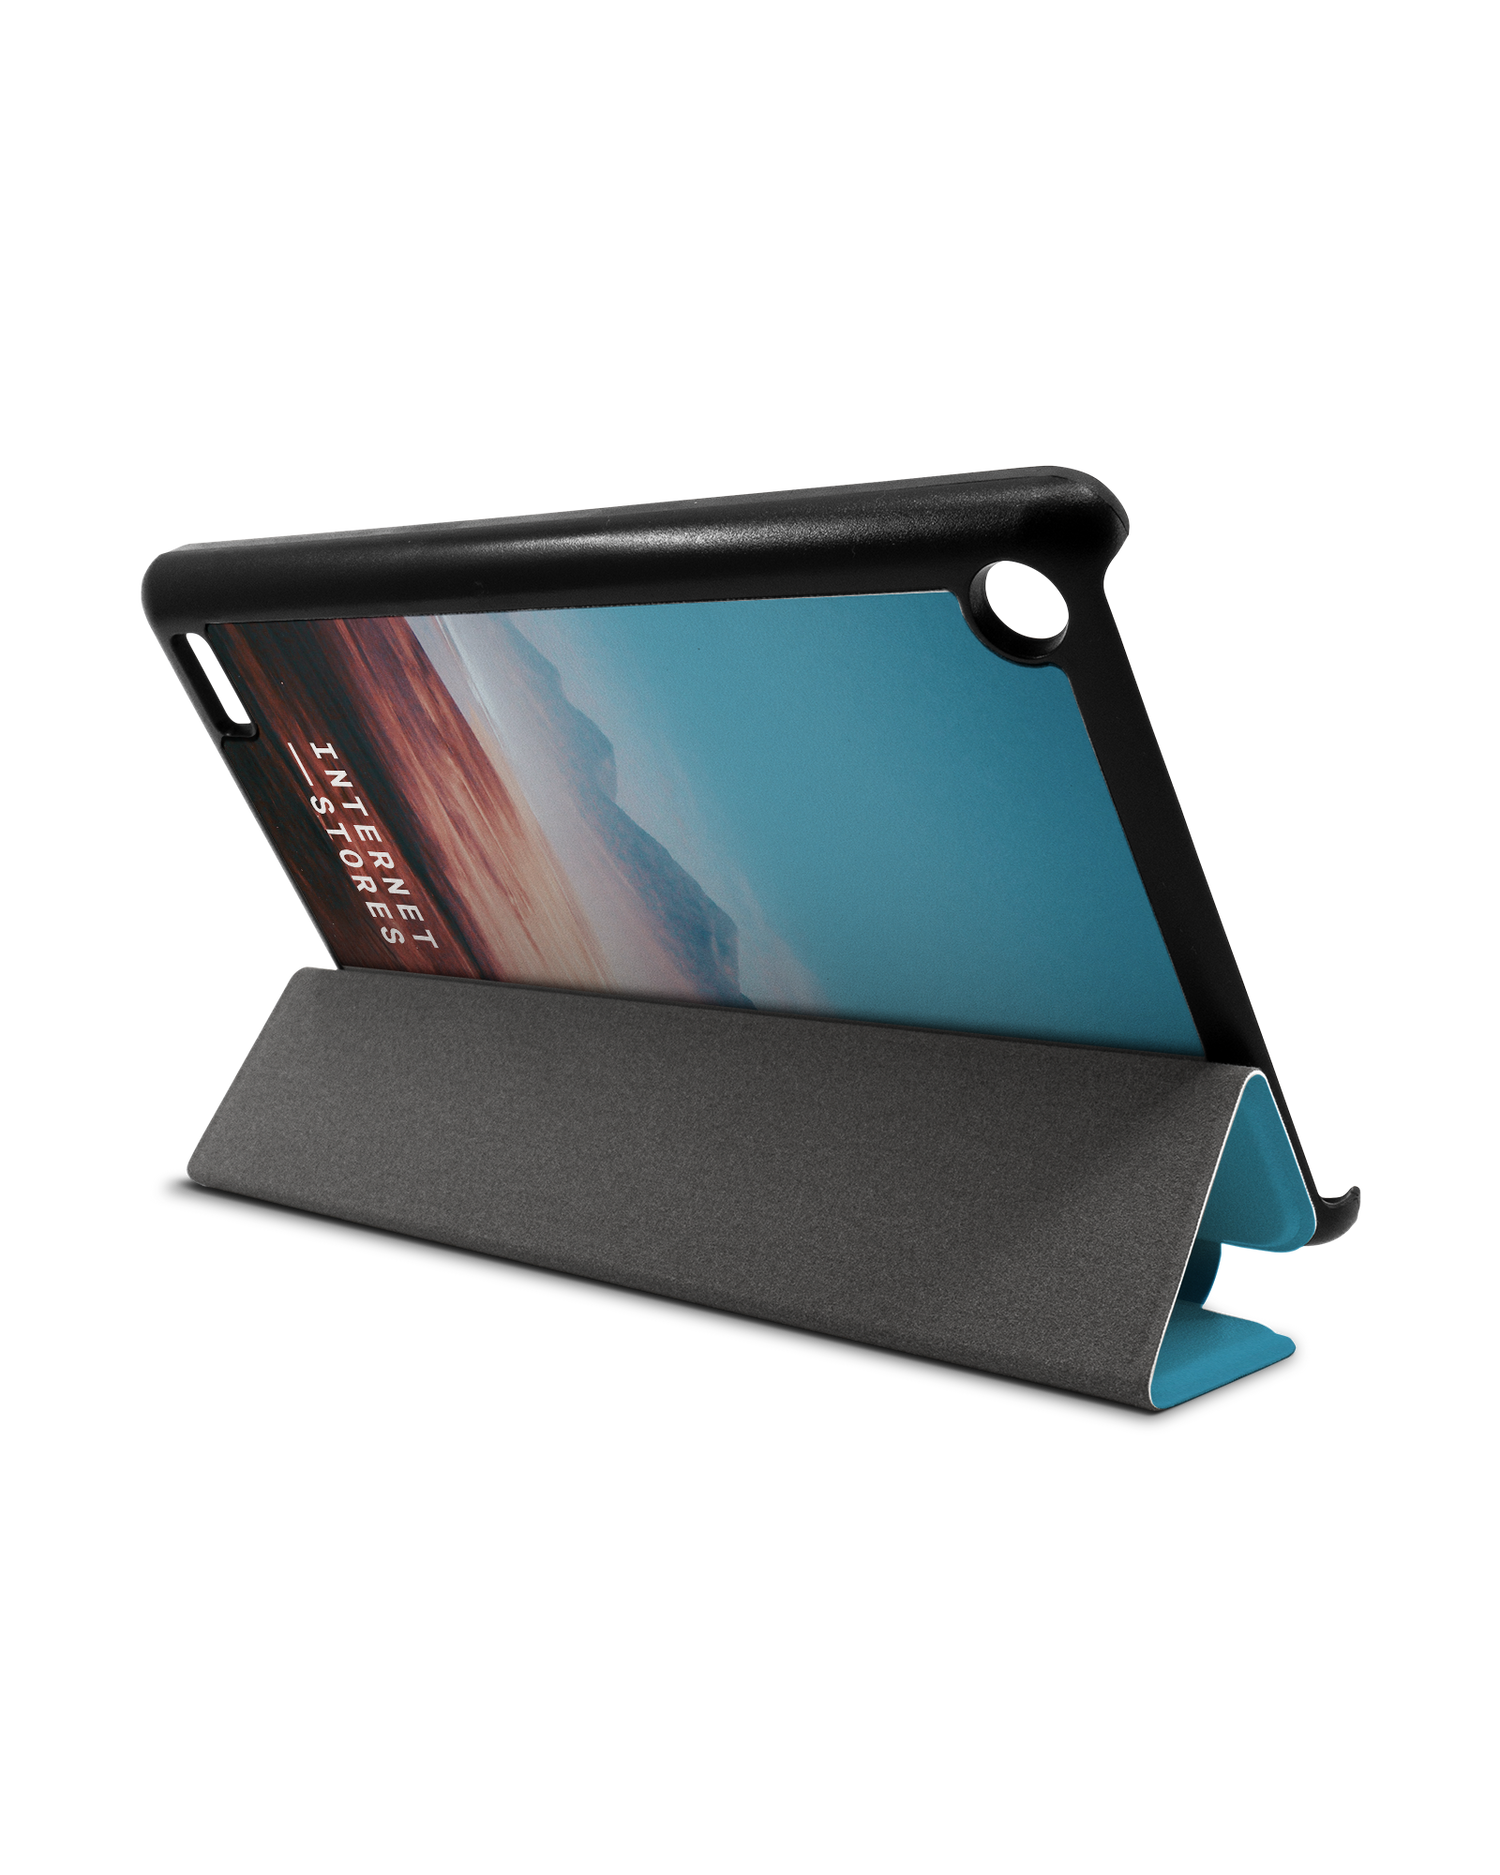 Sky Tablet Smart Case für Amazon Fire 7: Aufgestellt im Querformat